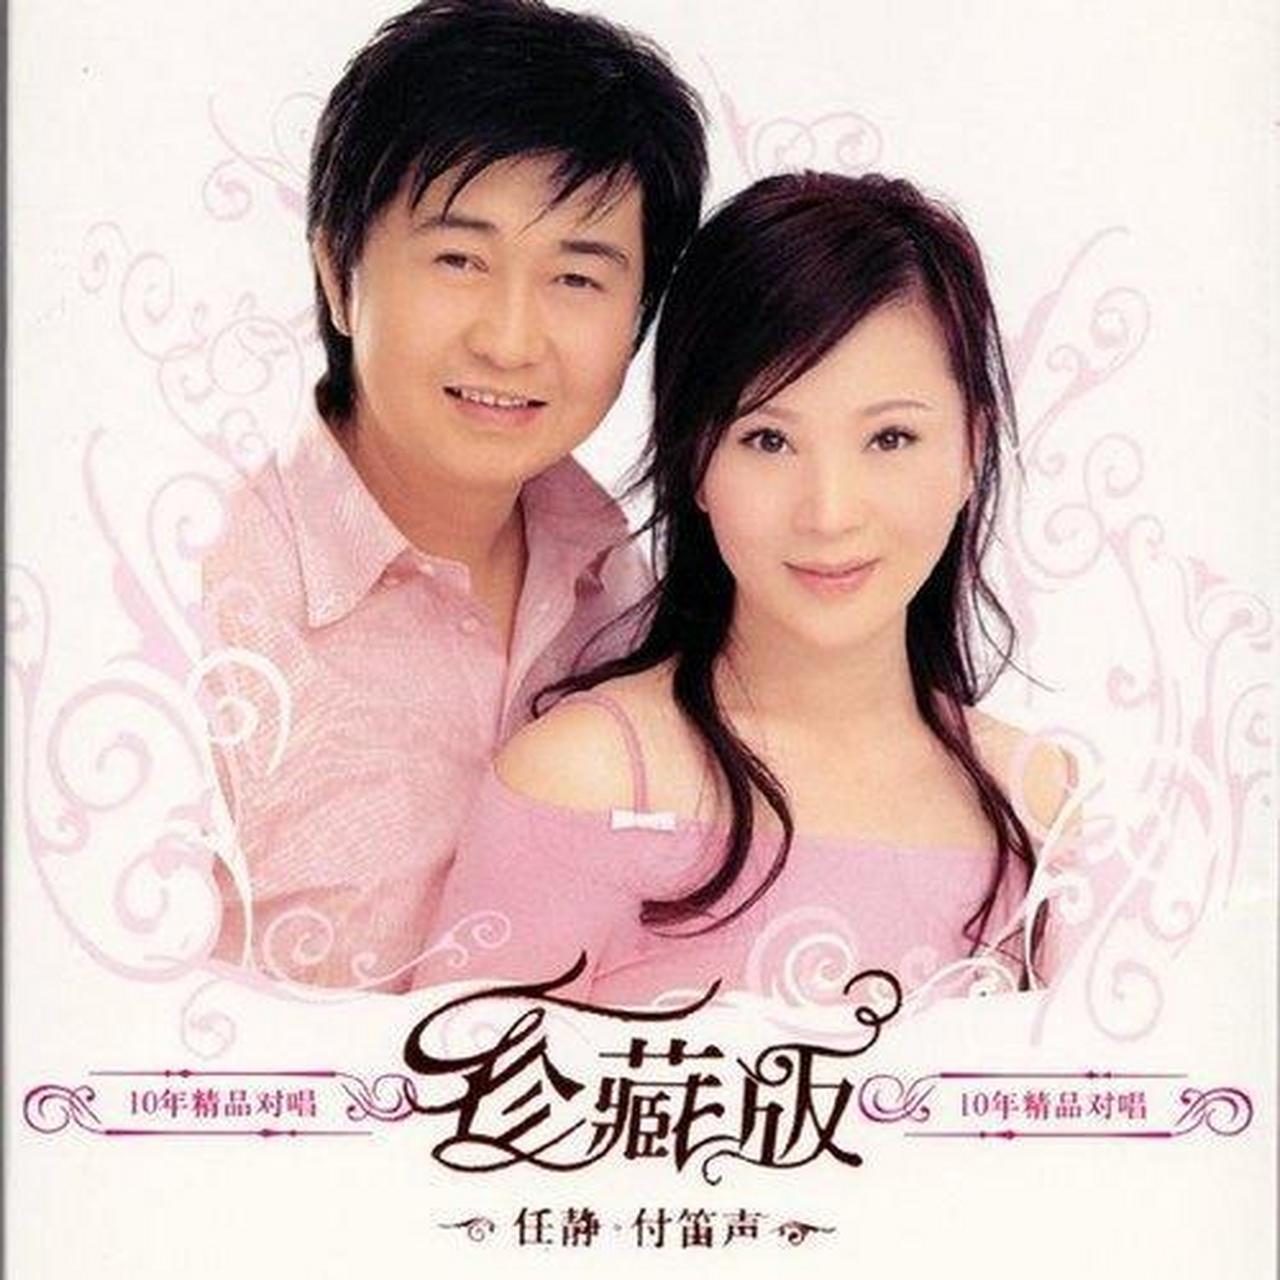 回到过去歌单: 知心爱人——付笛声/任静(2002)